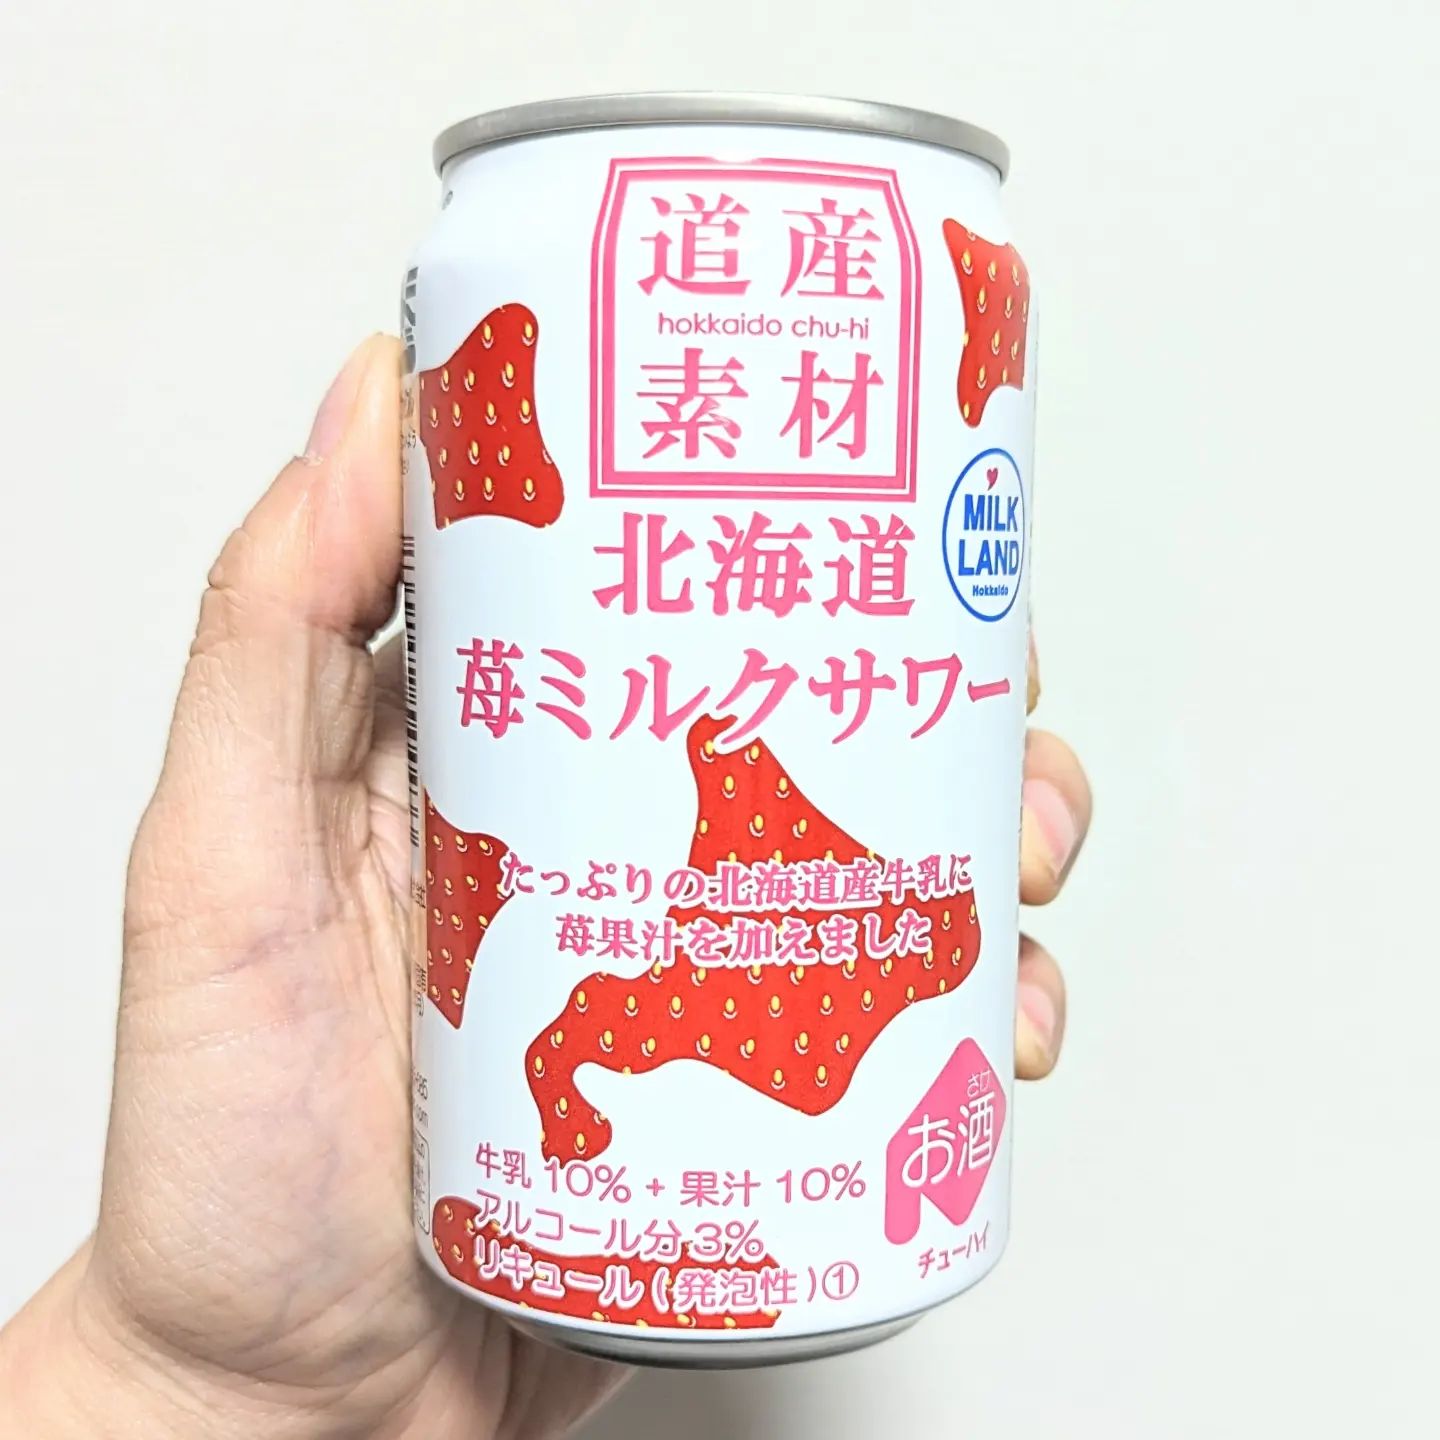 #いちごミルクラブ #北海道苺ミルクサワー #北海道麦酒醸造 謎イチゴ系－☆－－－本物イチゴ系甘さ強め系－－－☆－控え目系こってり系－－－☆－さっぱり系超ミルク系－－☆－－生クリーム系おもいで度－－☆－－ #侍猫度さっぱり仕上がりの激レア苺ミルクサワー！甘さ控えめで一般の方が飲みやすいテイストに仕上がっております！なかなか見つからなかったサワーでございますね。北海道アンテナショップのお土産でいただいたやつでございます！ごちそうさまでした！#いちごオレ #いちごオレ味 #いちごミルク #いちごミルクみたい #いちご牛乳 #いちご牛乳味 #イチゴ牛乳 #いちご牛乳クラブ #苺牛乳 #苺牛乳が好き #苺ミルク #苺スイーツ #苺 #苺好きに生まれたからには #メソギア派 #糖分 #いちごミルク味 #スイーツ #スイーツ好き #スイーツスタグラム #スイーツタイム #スイーツ写真 #strawberry #strawberrymilk